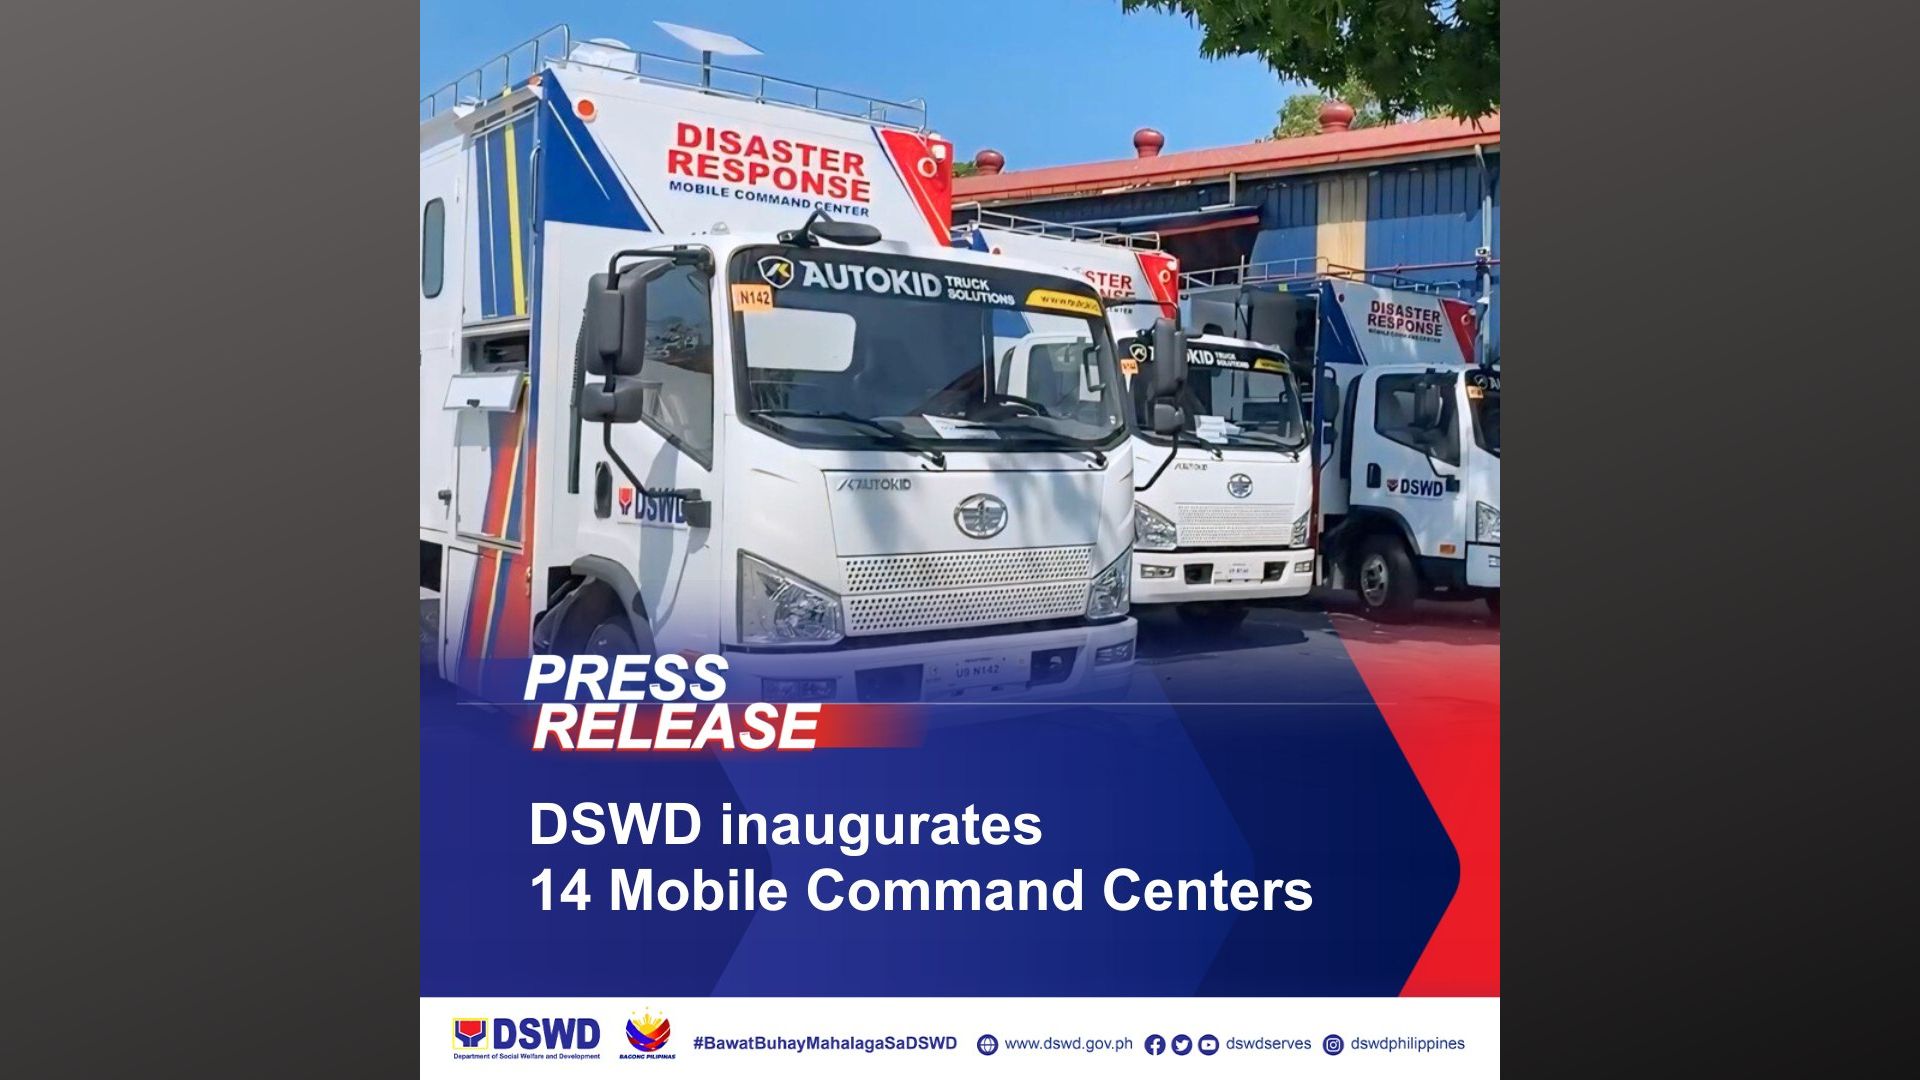 Mobile Command Centers ipakakalat sa mga field office ng DSWD